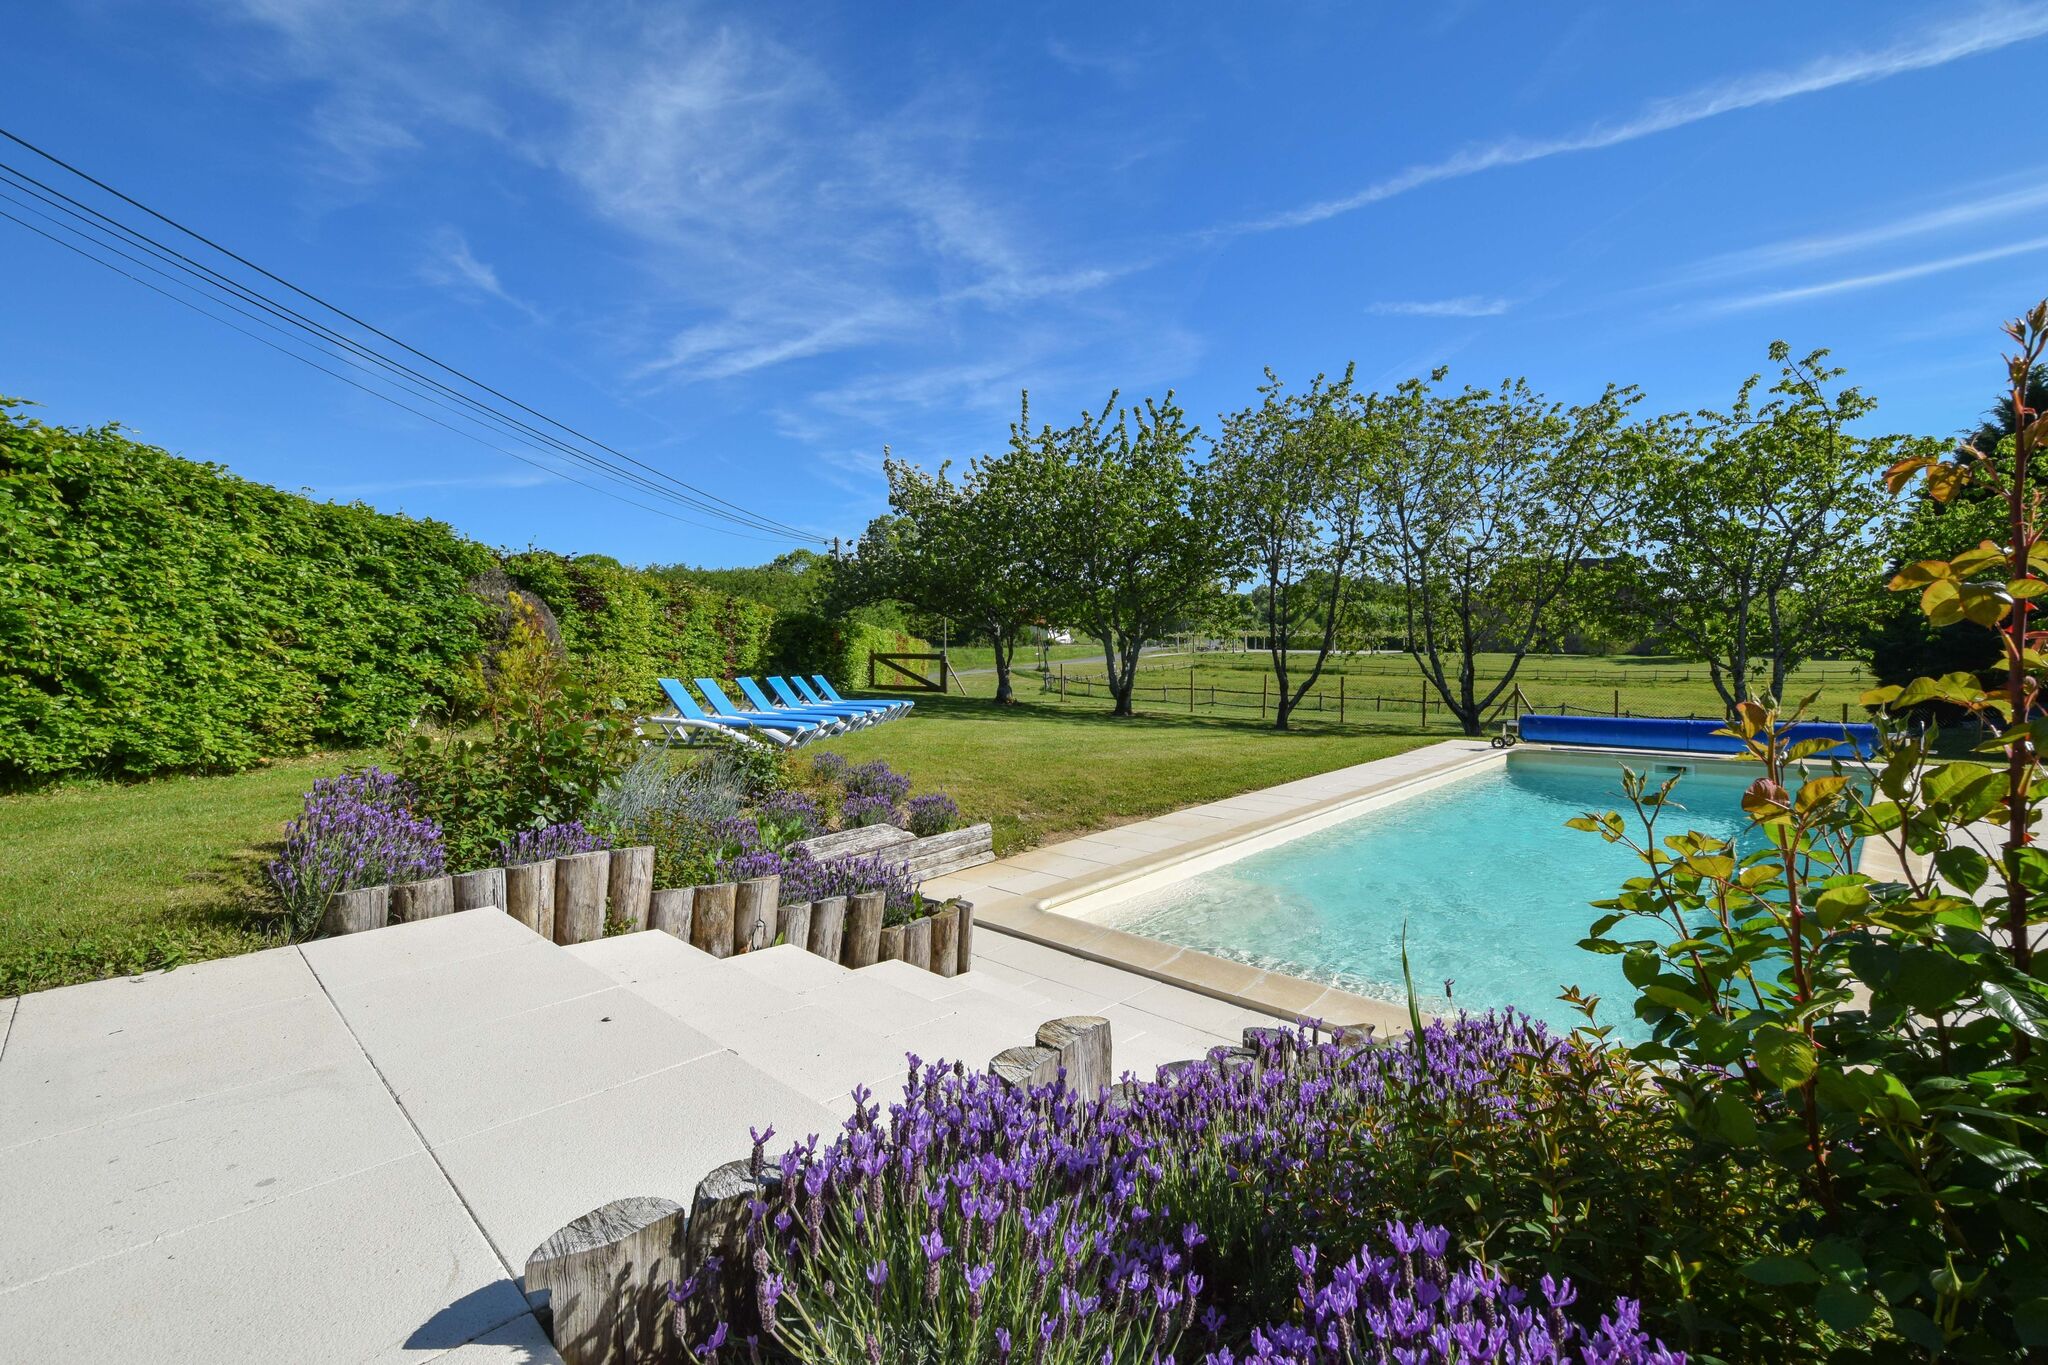 Vrijstaand vakantiehuis met prachtig uitzicht en een verwarmd privé zwembad.